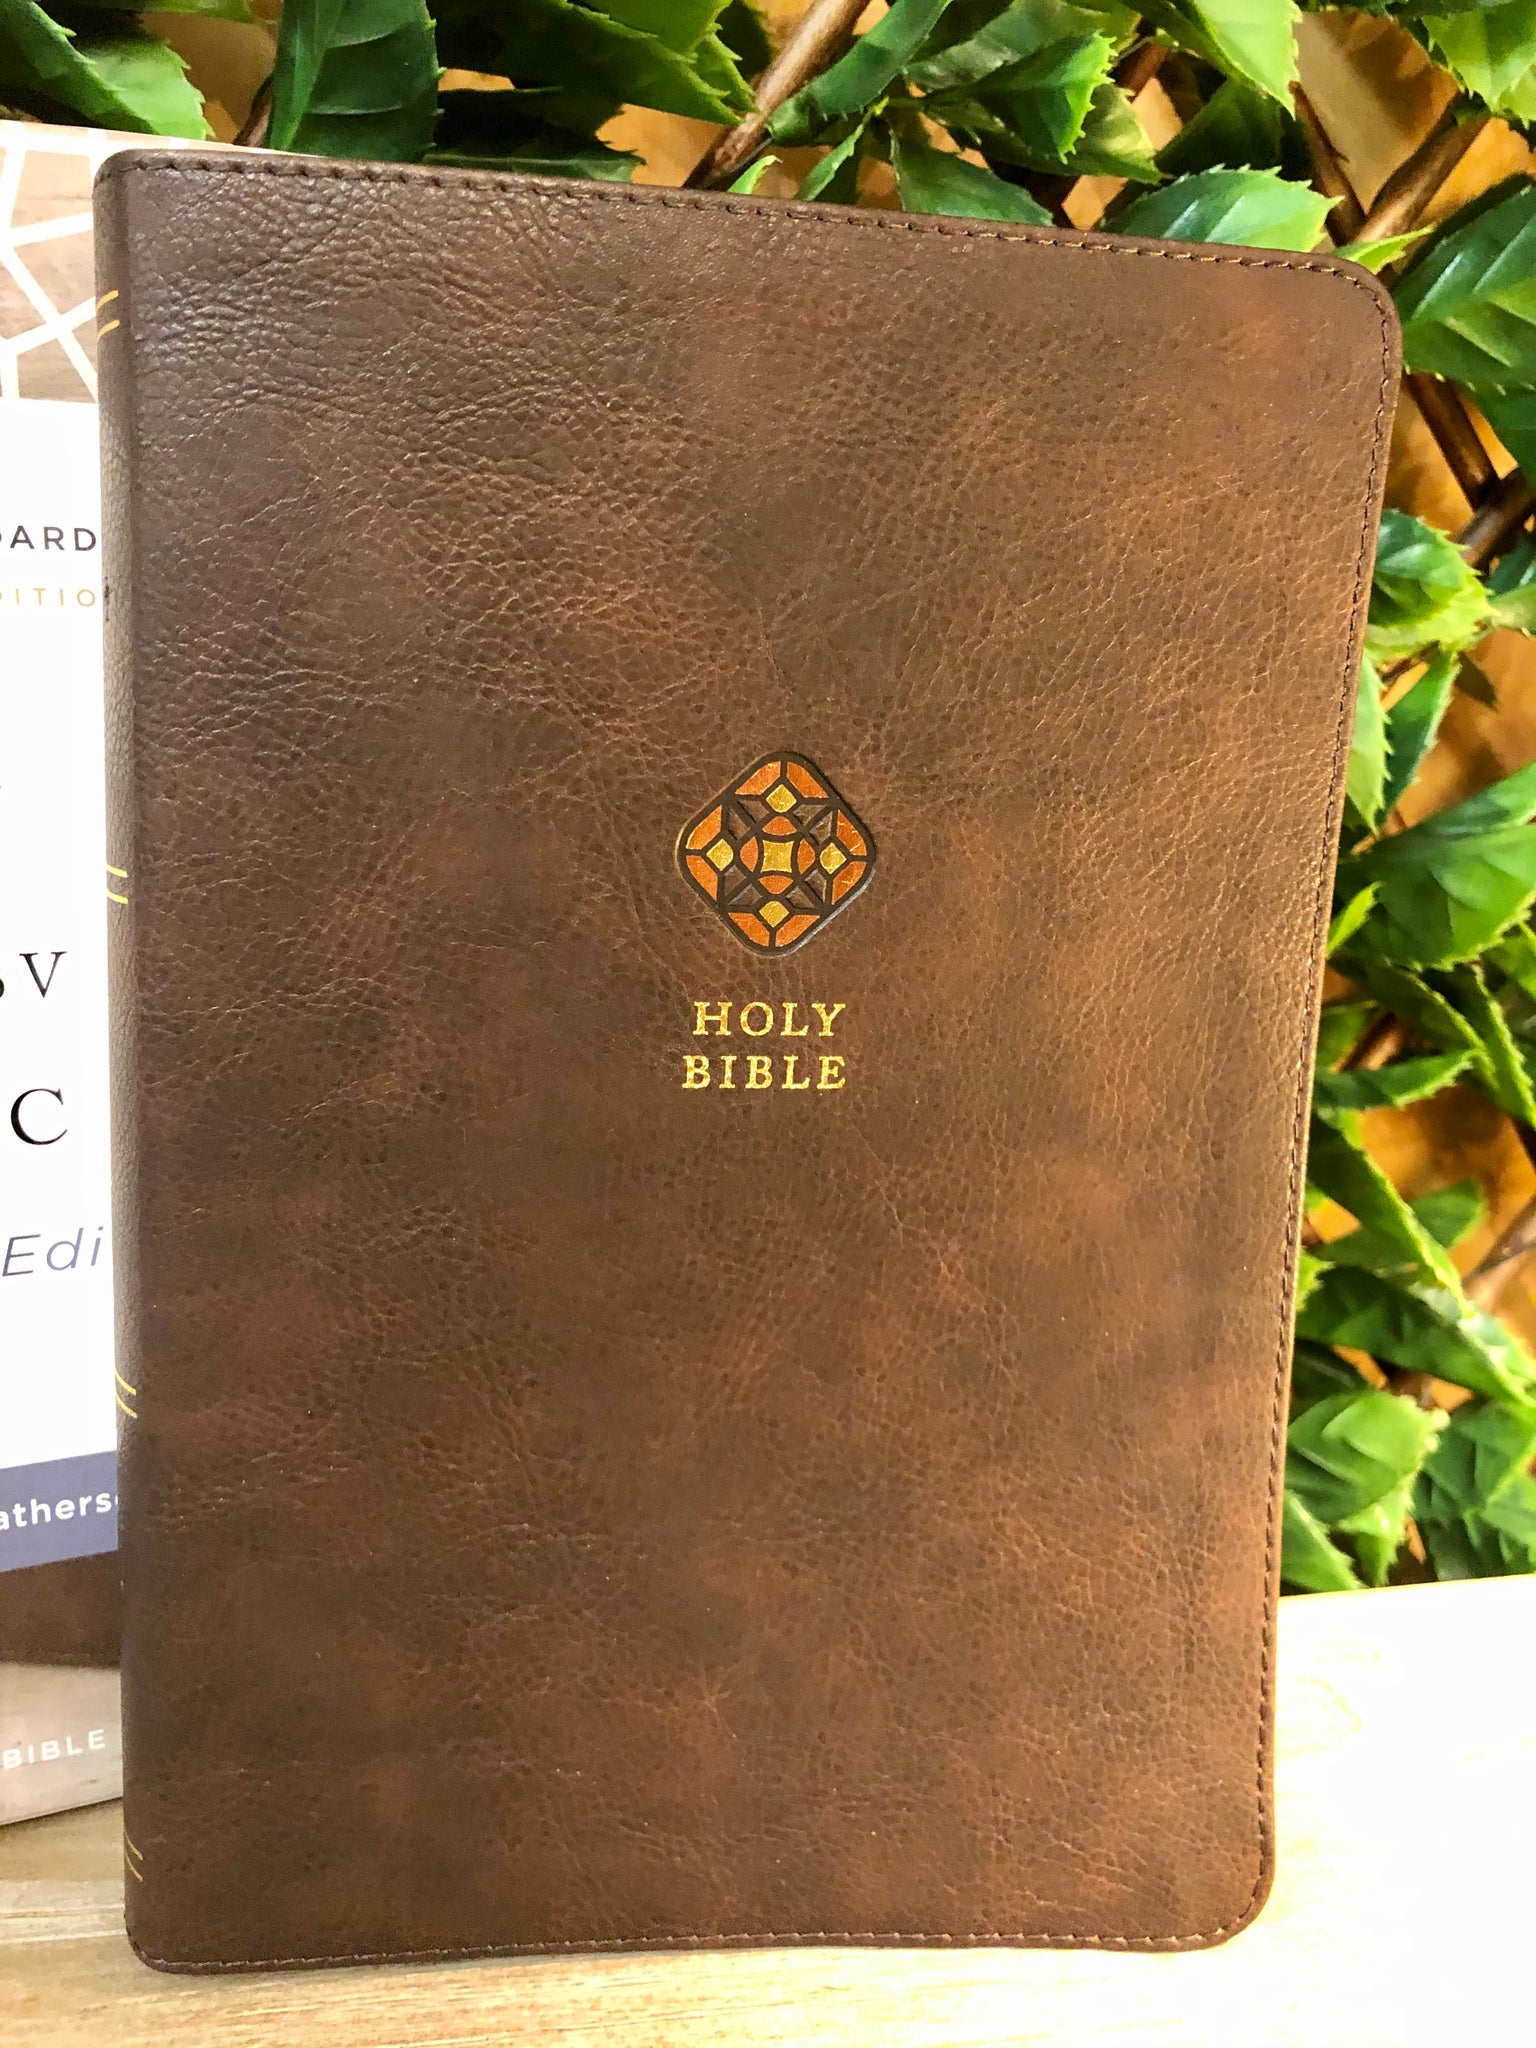 Catholic Bible Journaling (Tools + Resources)